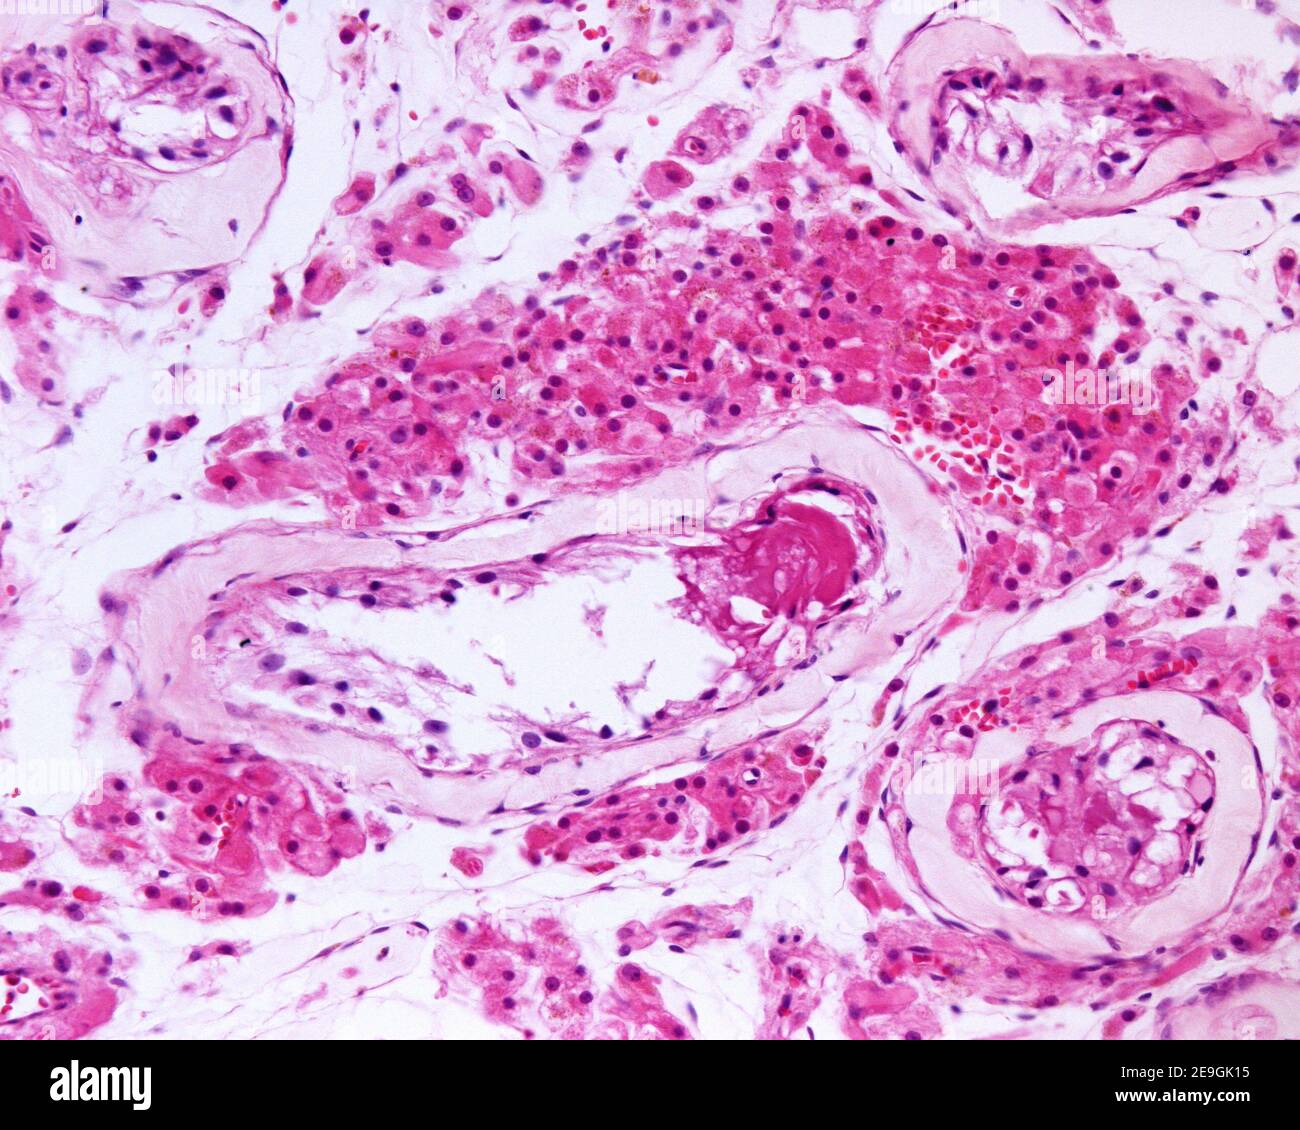 Grand groupe de cellules de Leydig dans un cas de syndrome de Klinefelter, caractérisé par un 47, XXY caryotype. L'hyperplasie de l'interstitium testiculaire Banque D'Images